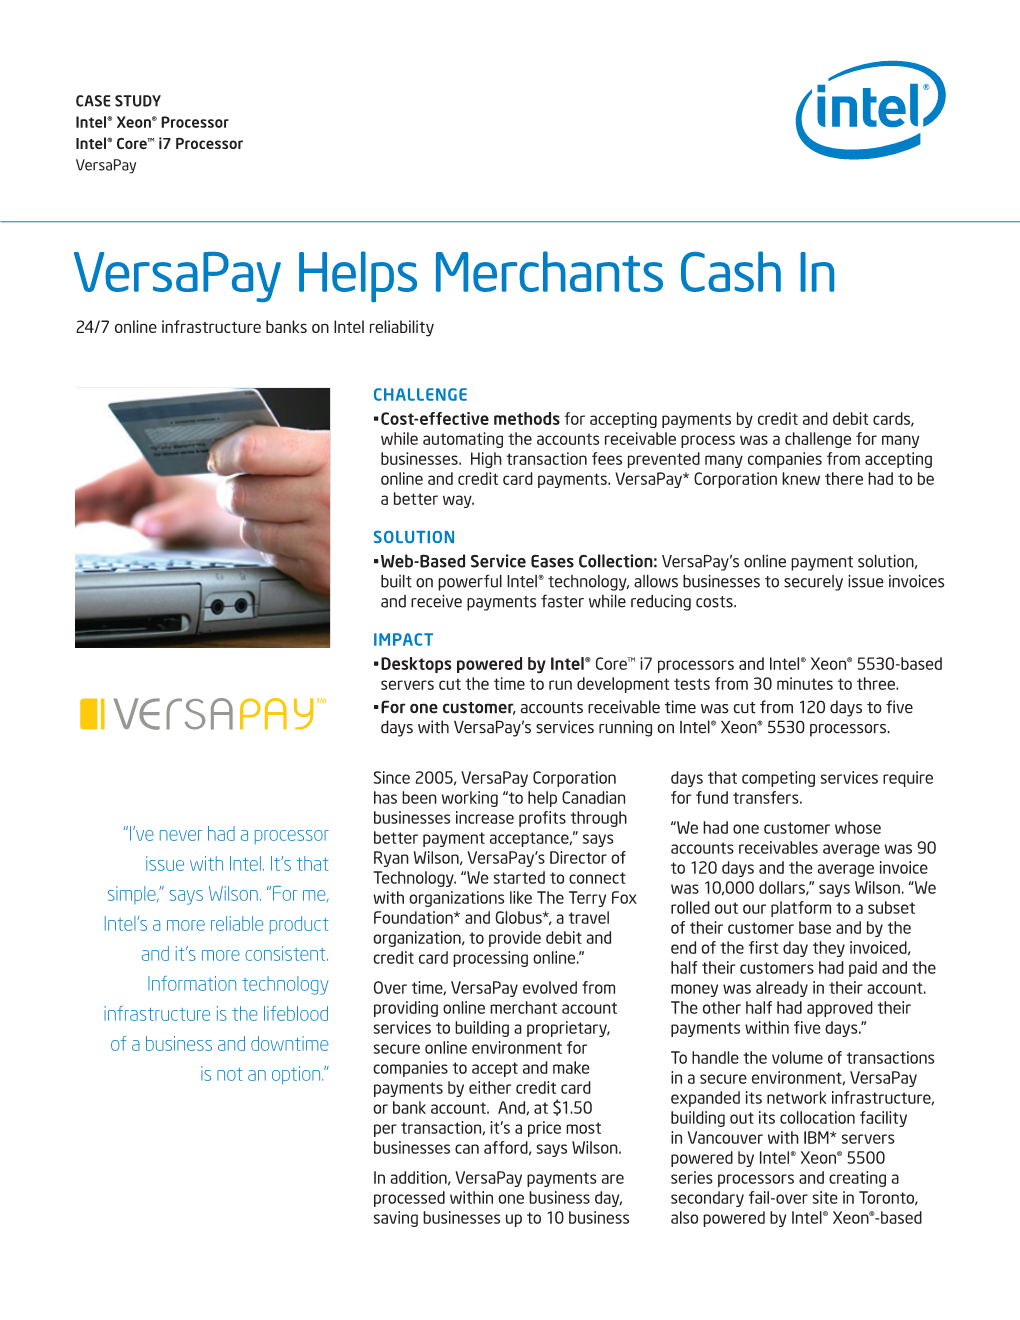 Versapay Helps Merchants Cash In